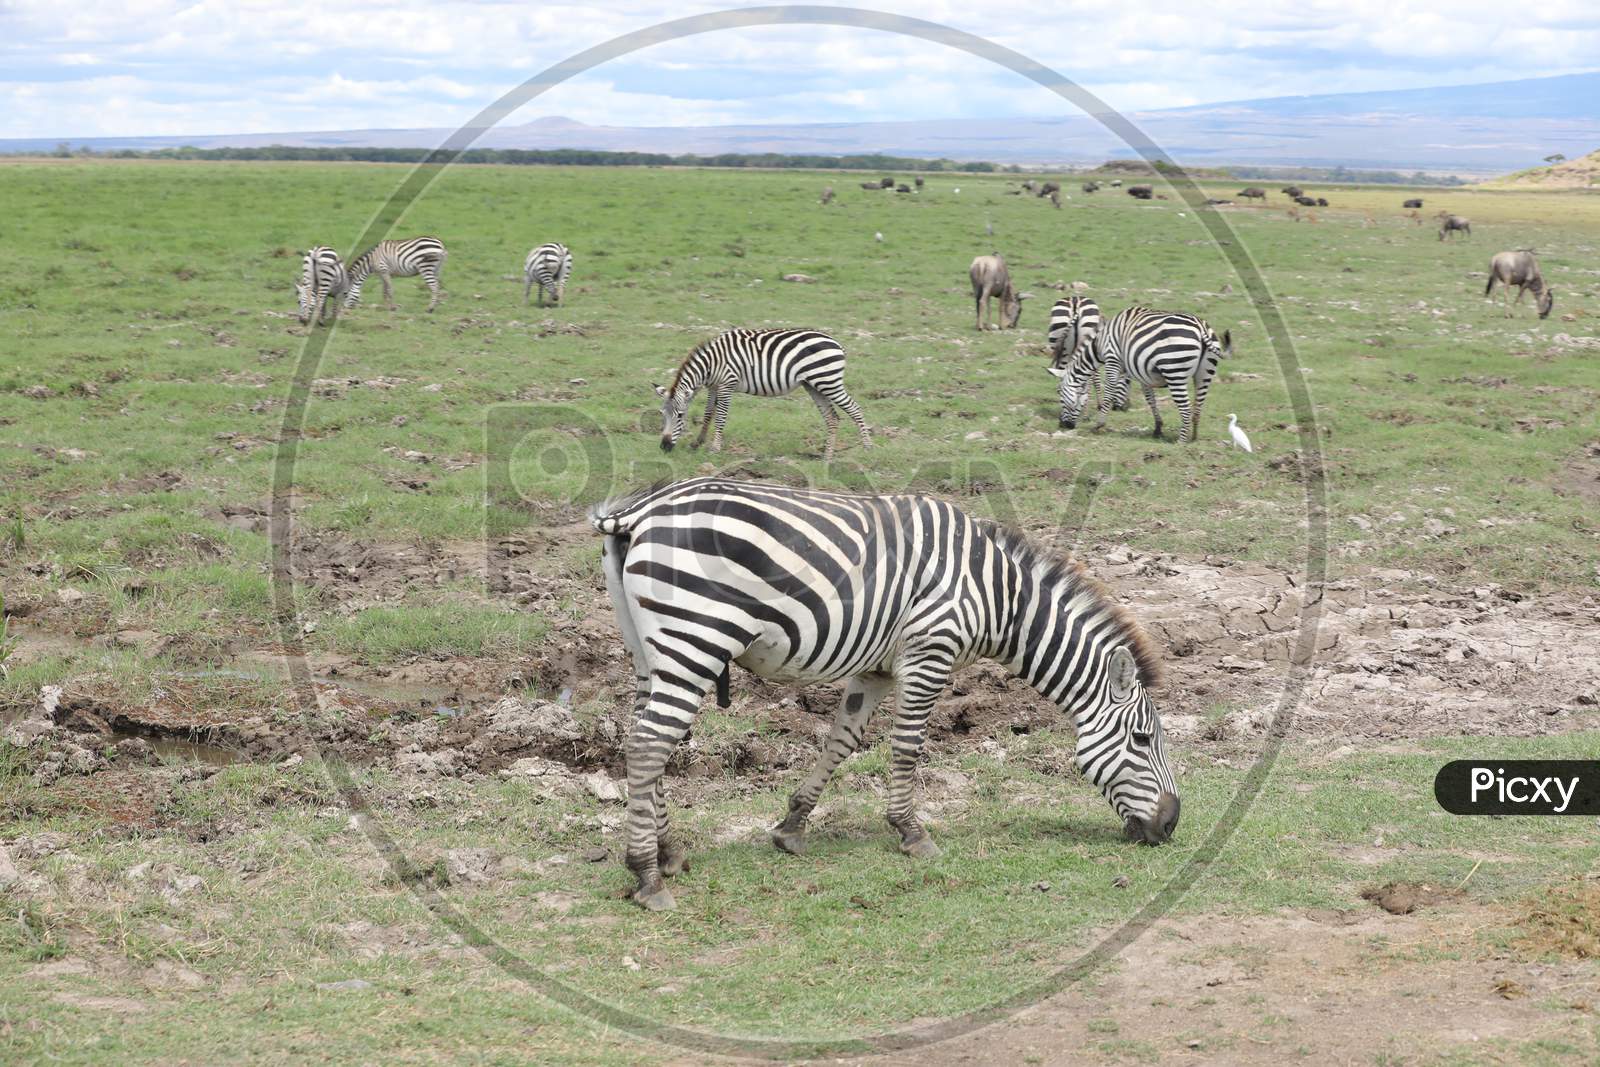 A herd of Zebras grazing